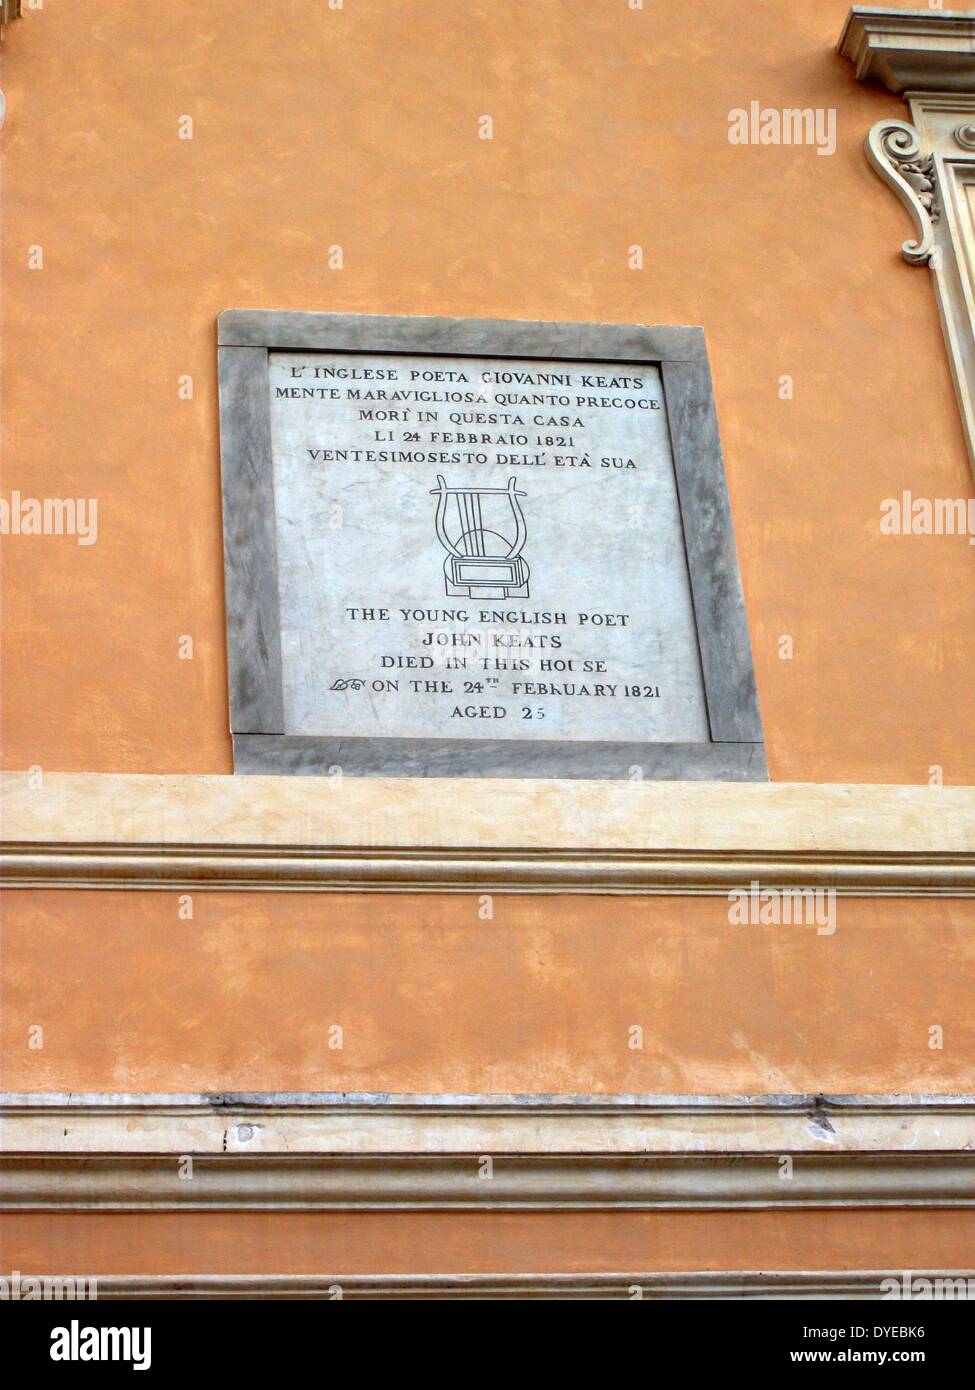 Vue d'un signe sur un mur dans la Piazza di Spagna située au bas de l'Espagne. Rome. Italie 2014 Banque D'Images